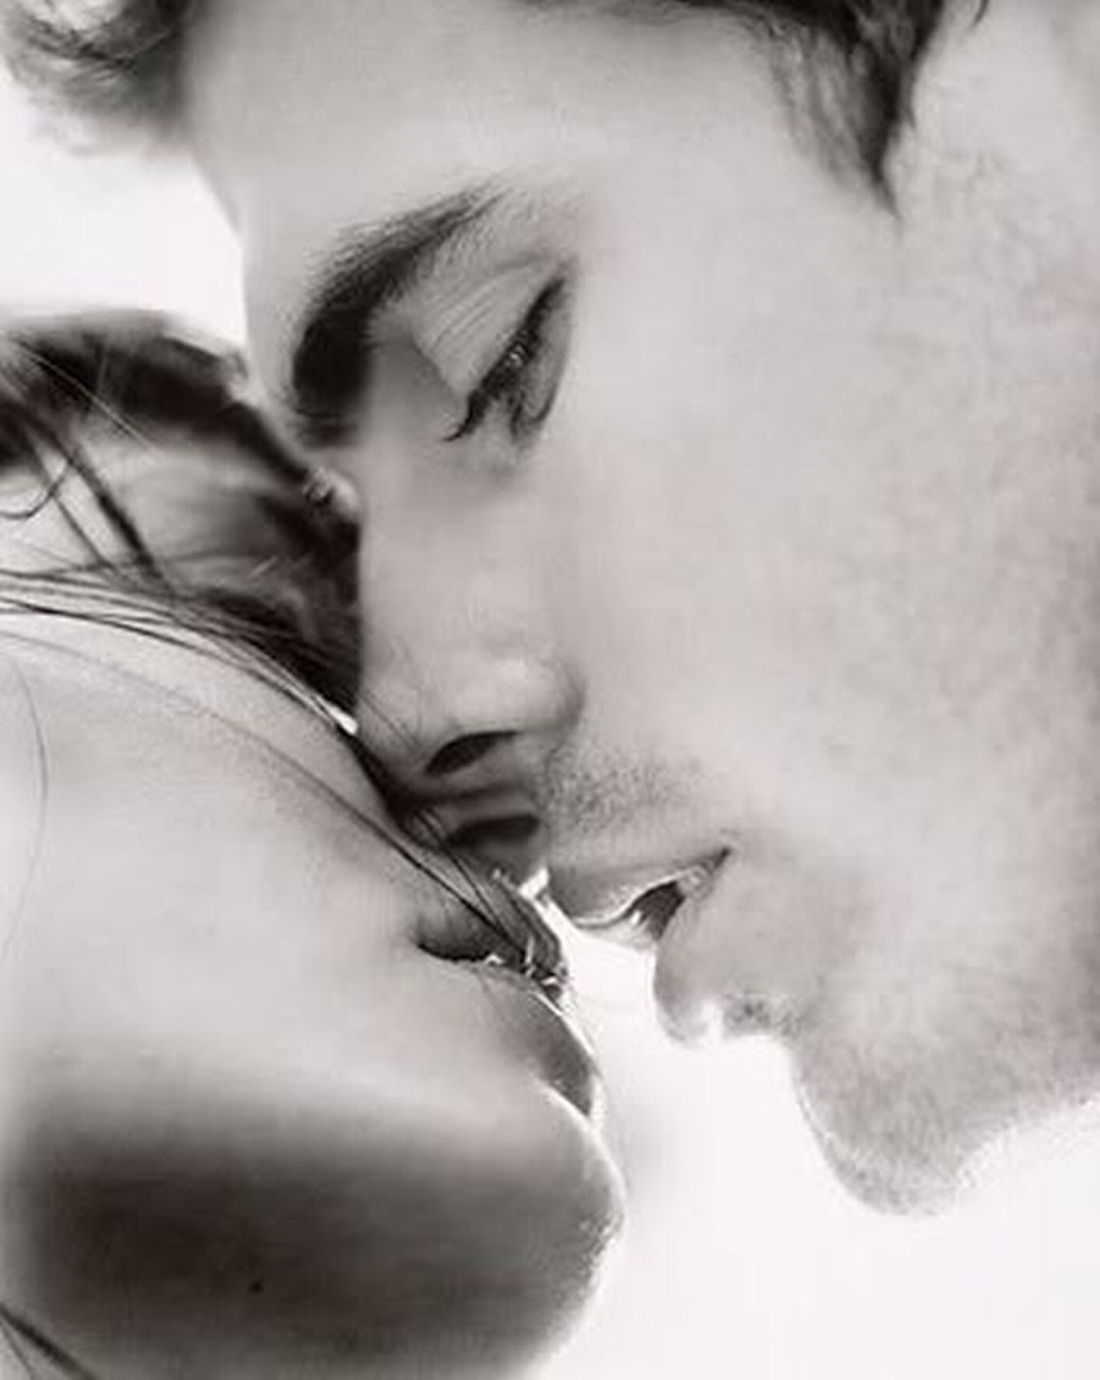 Тихо поцелую чувство тебе передам. Нежный поцелуй. Красивый поцелуй. Страстные поцелуи. Поцелуй картинки красивые.